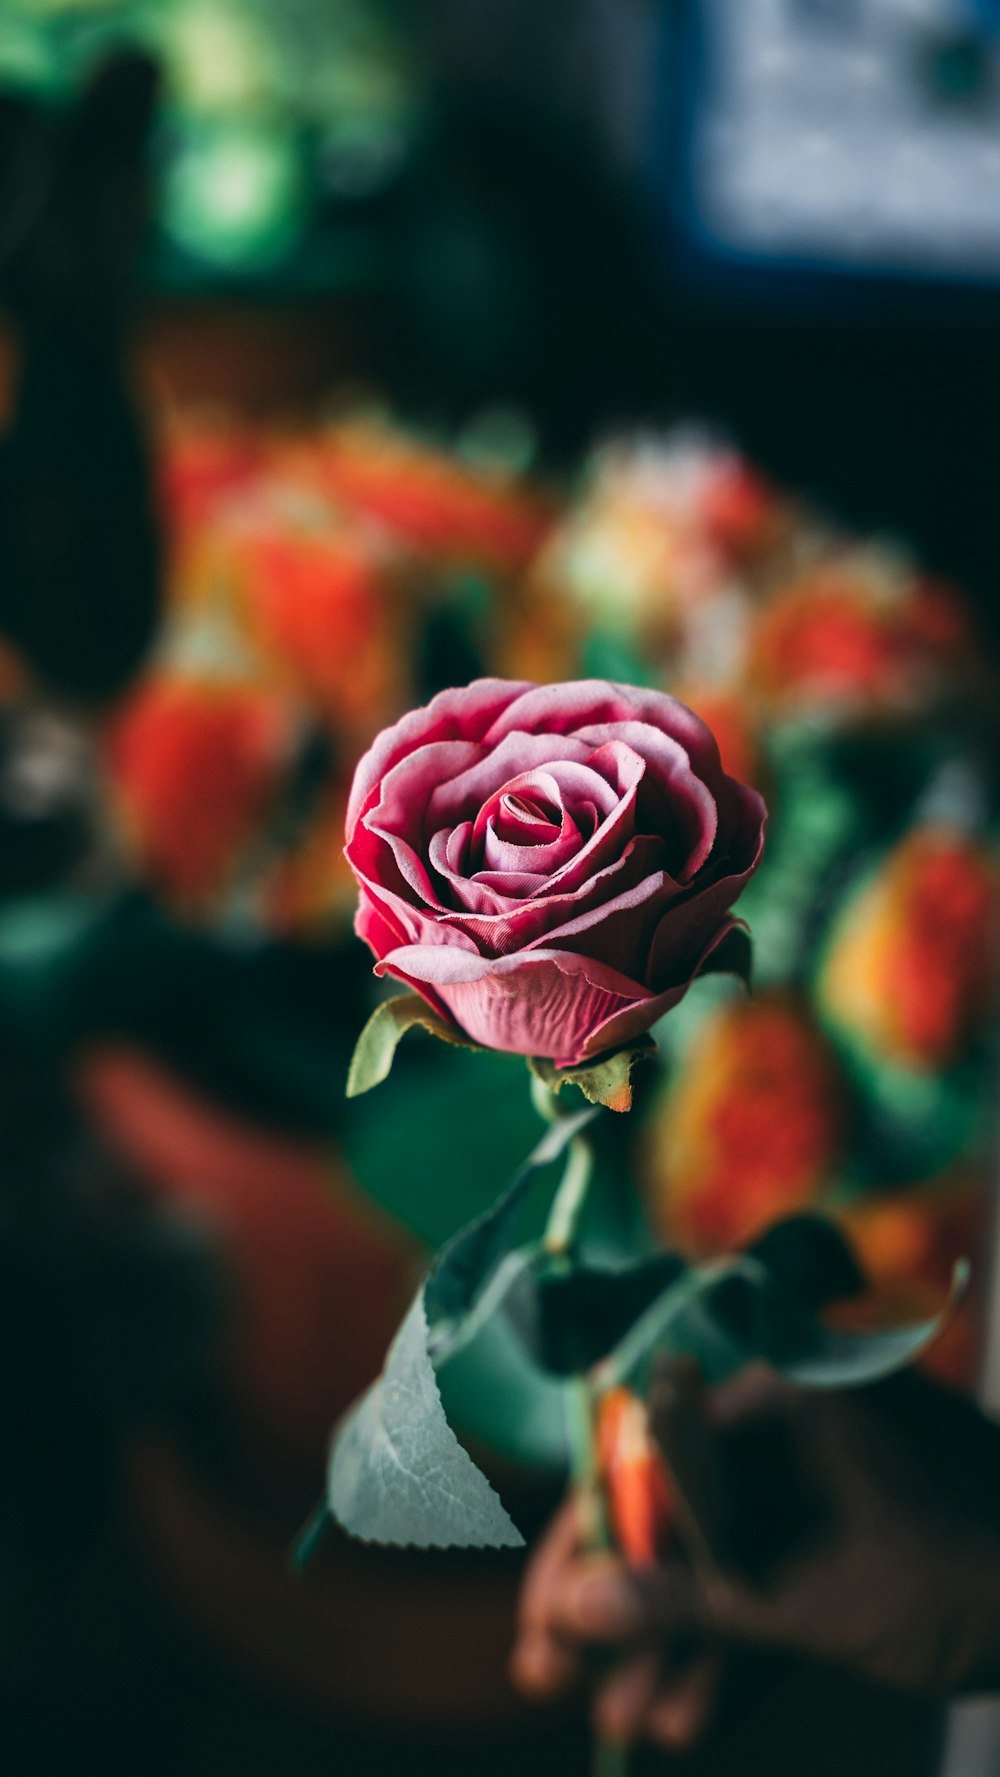 rosa rossa in fiore foto ravvicinata